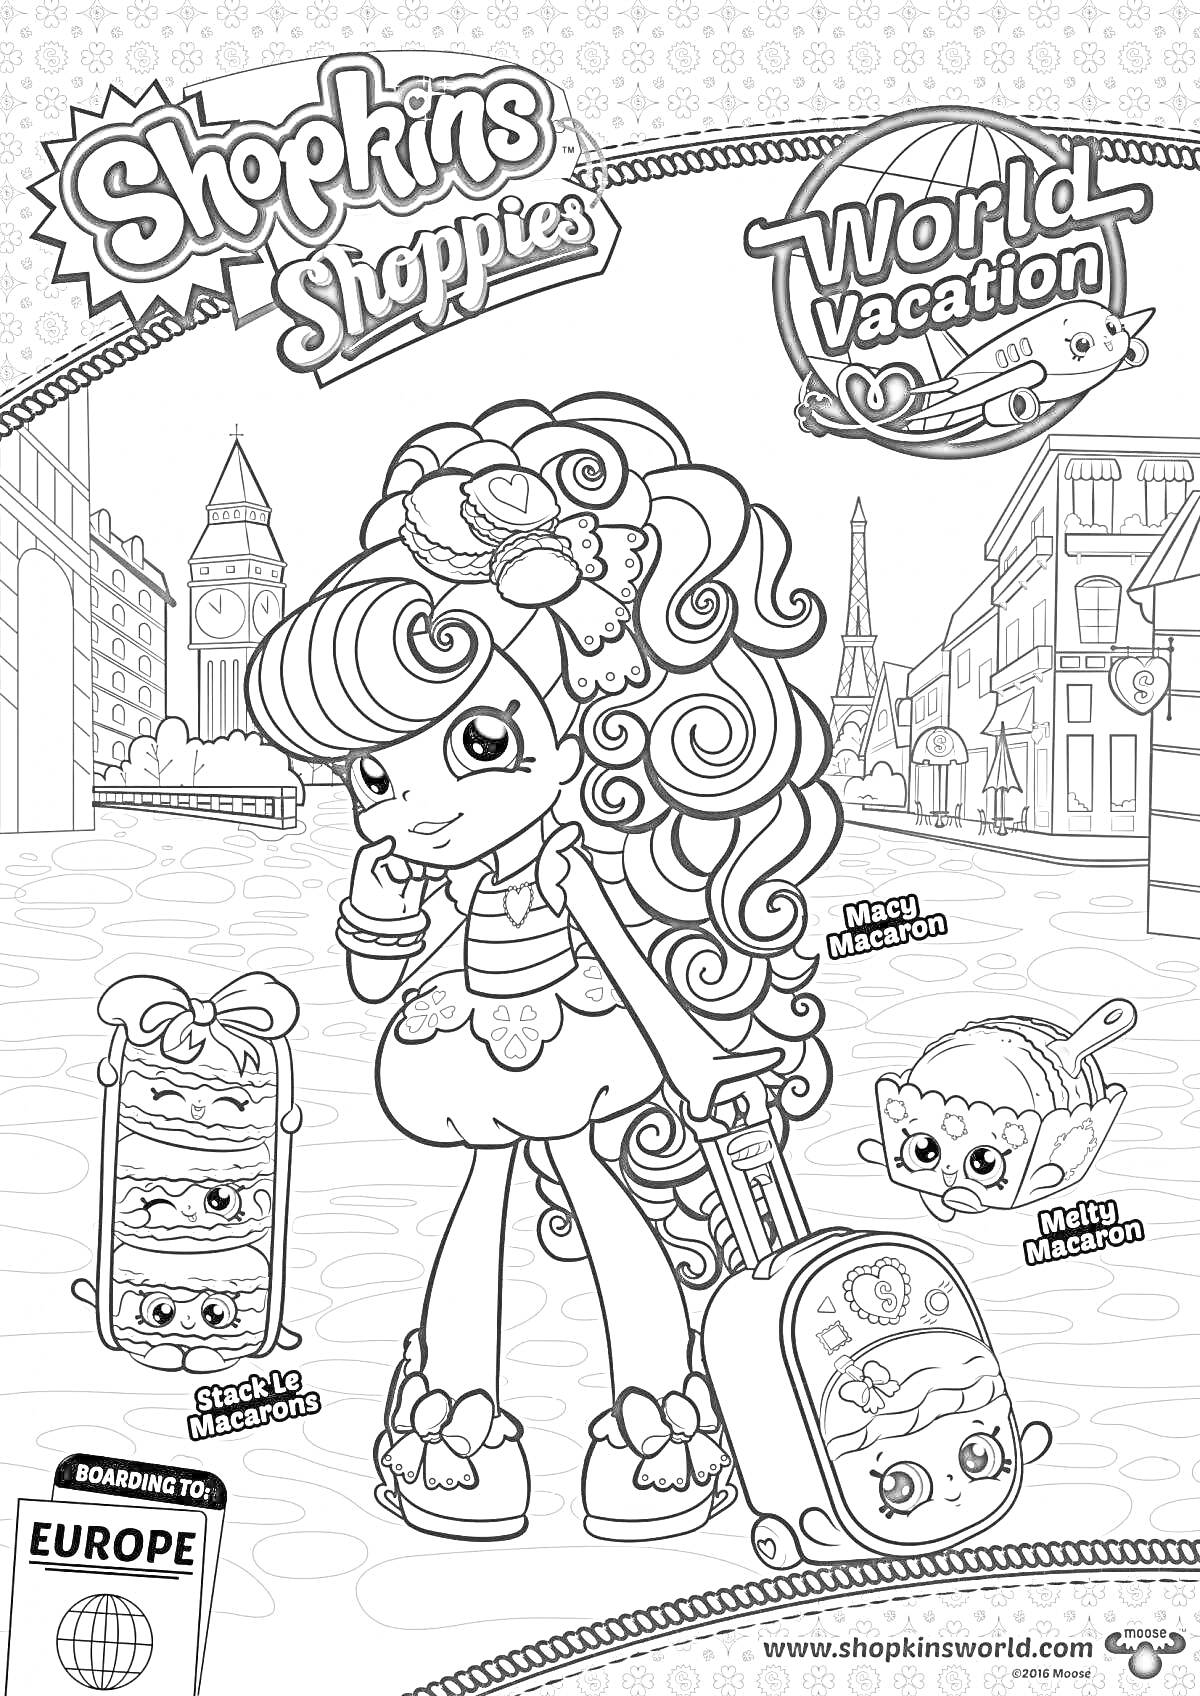 Раскраска Картинка-раскраска с изображением куклы Donatina из серии Shopkins Shoppies World Vacation на фоне европейского города. На изображении также есть наклейки с изображением Macy Macaroon и Mindy Macaron, а внизу страницы написано 